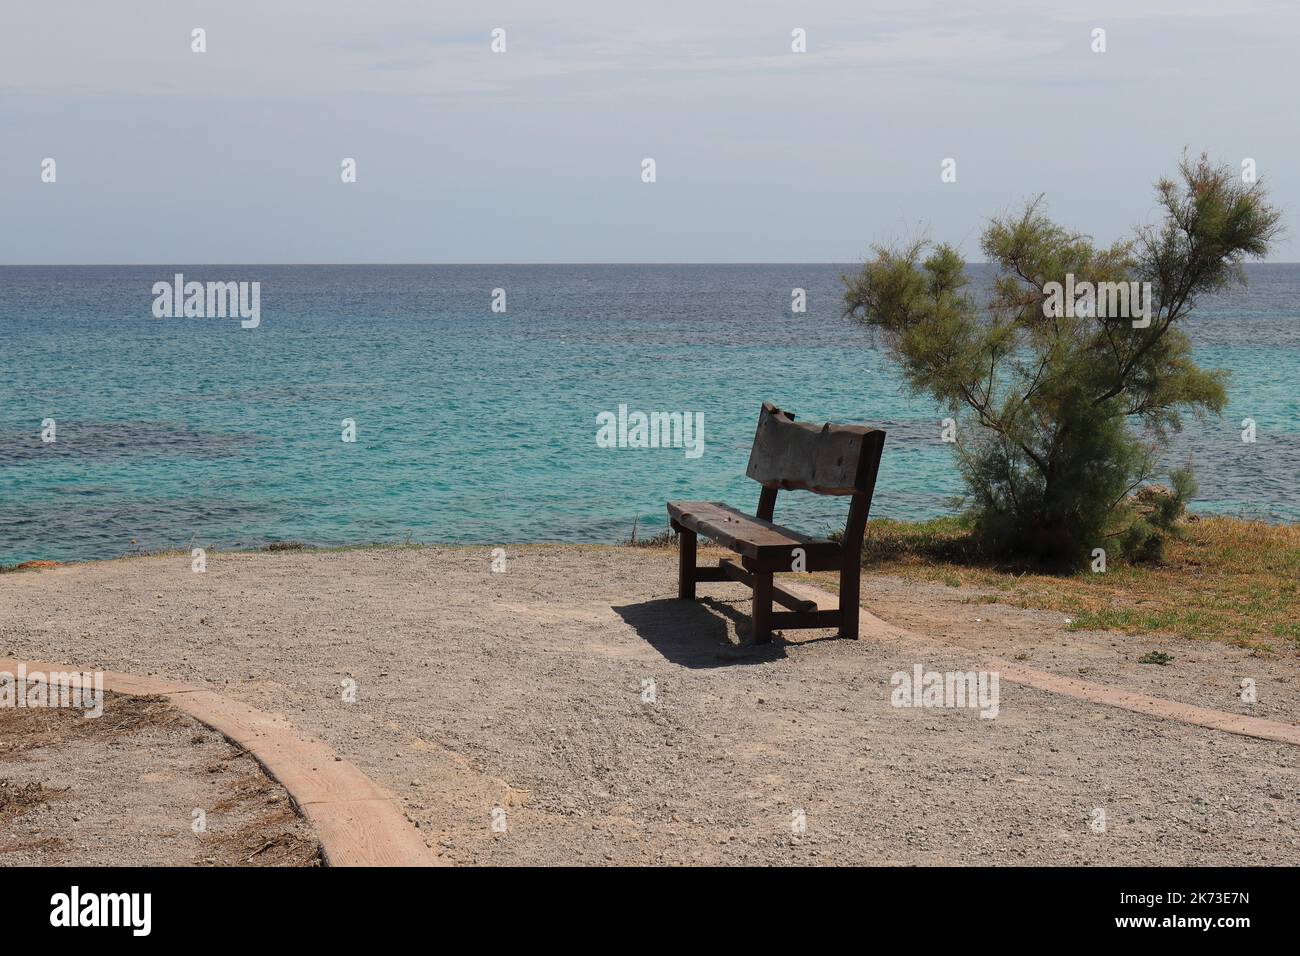 à côté d'un petit tamarisque invite un banc en bois près de la mer à s'attarder, copier l'espace Banque D'Images